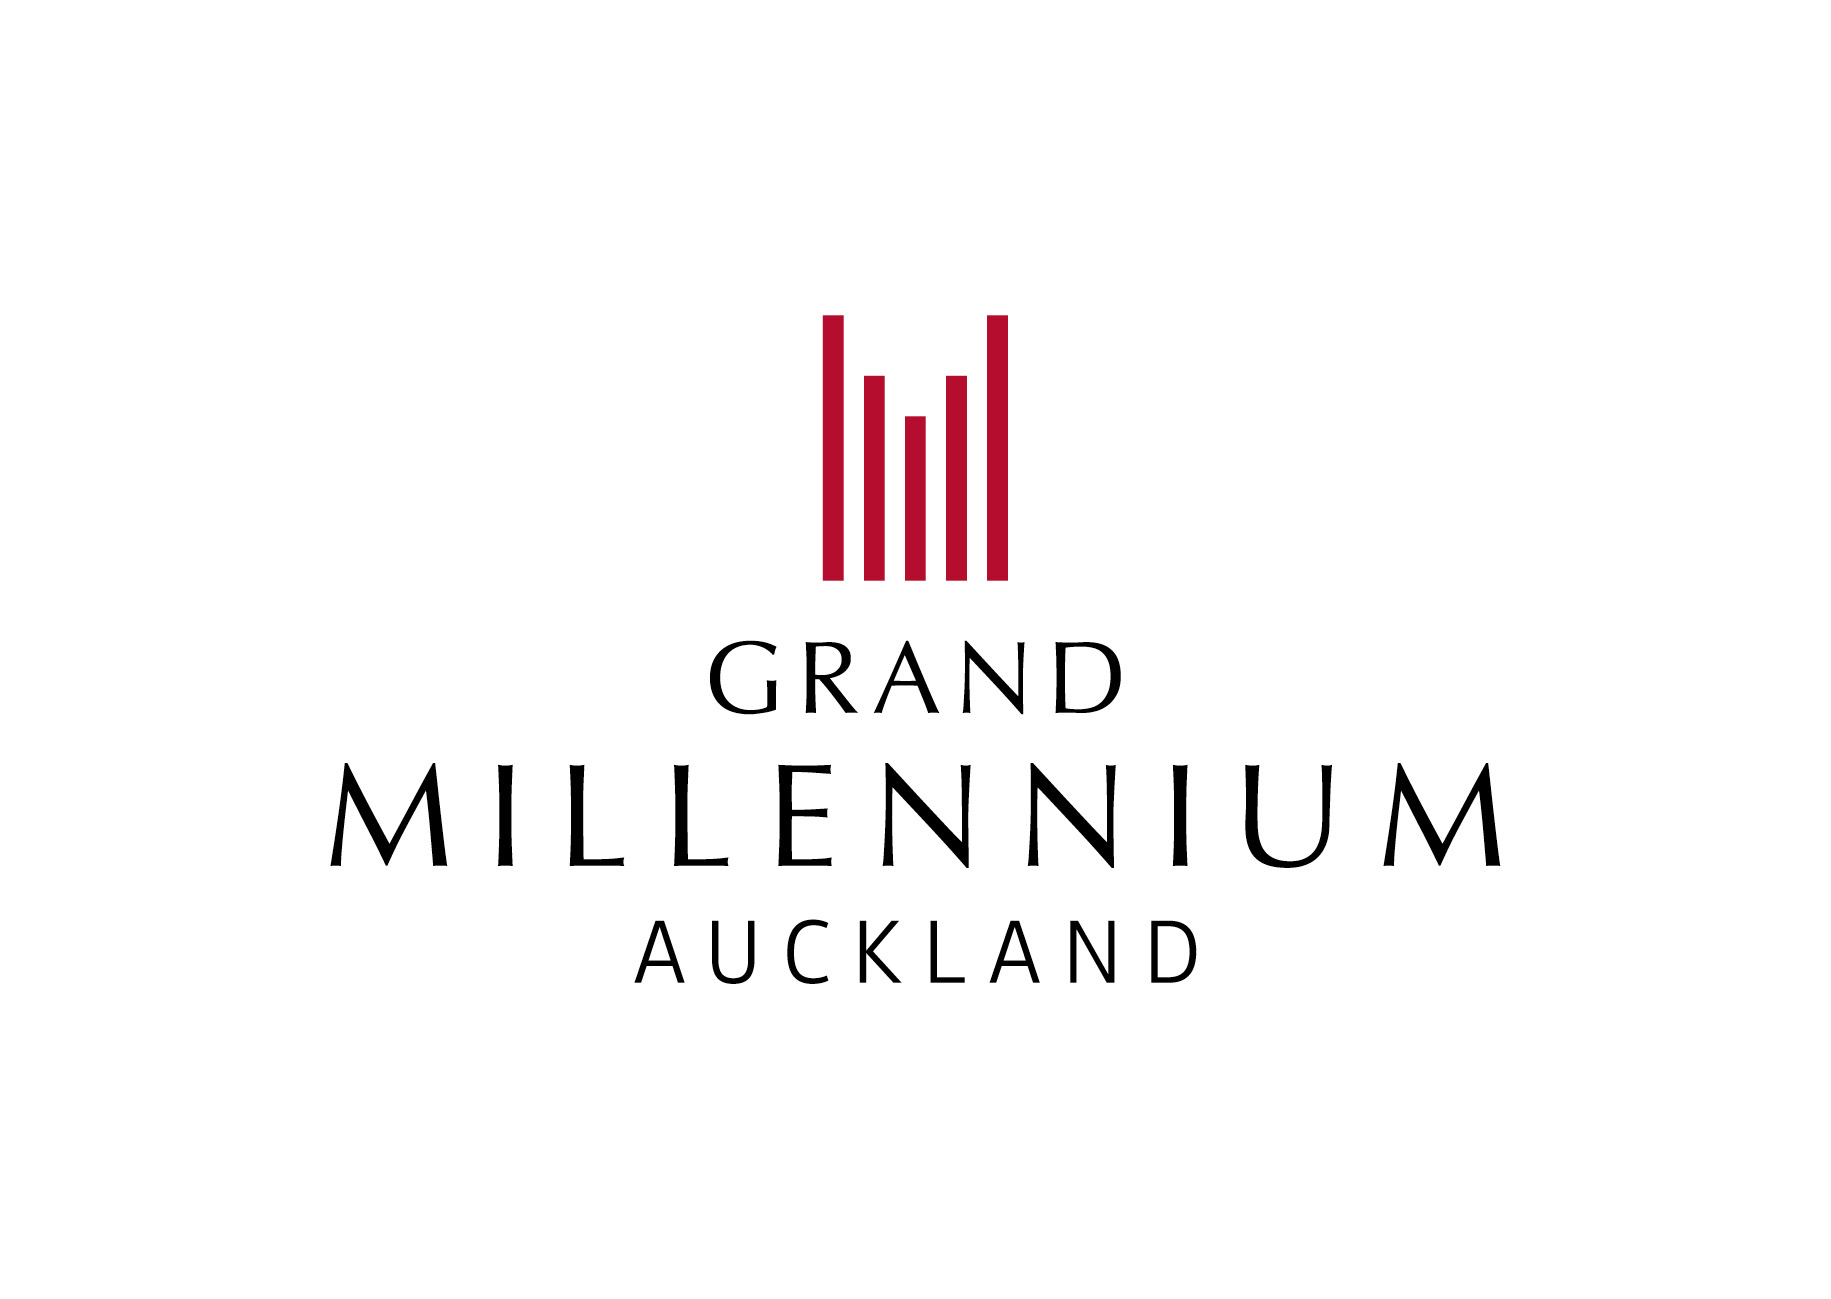 
Grand Millennium Auckland